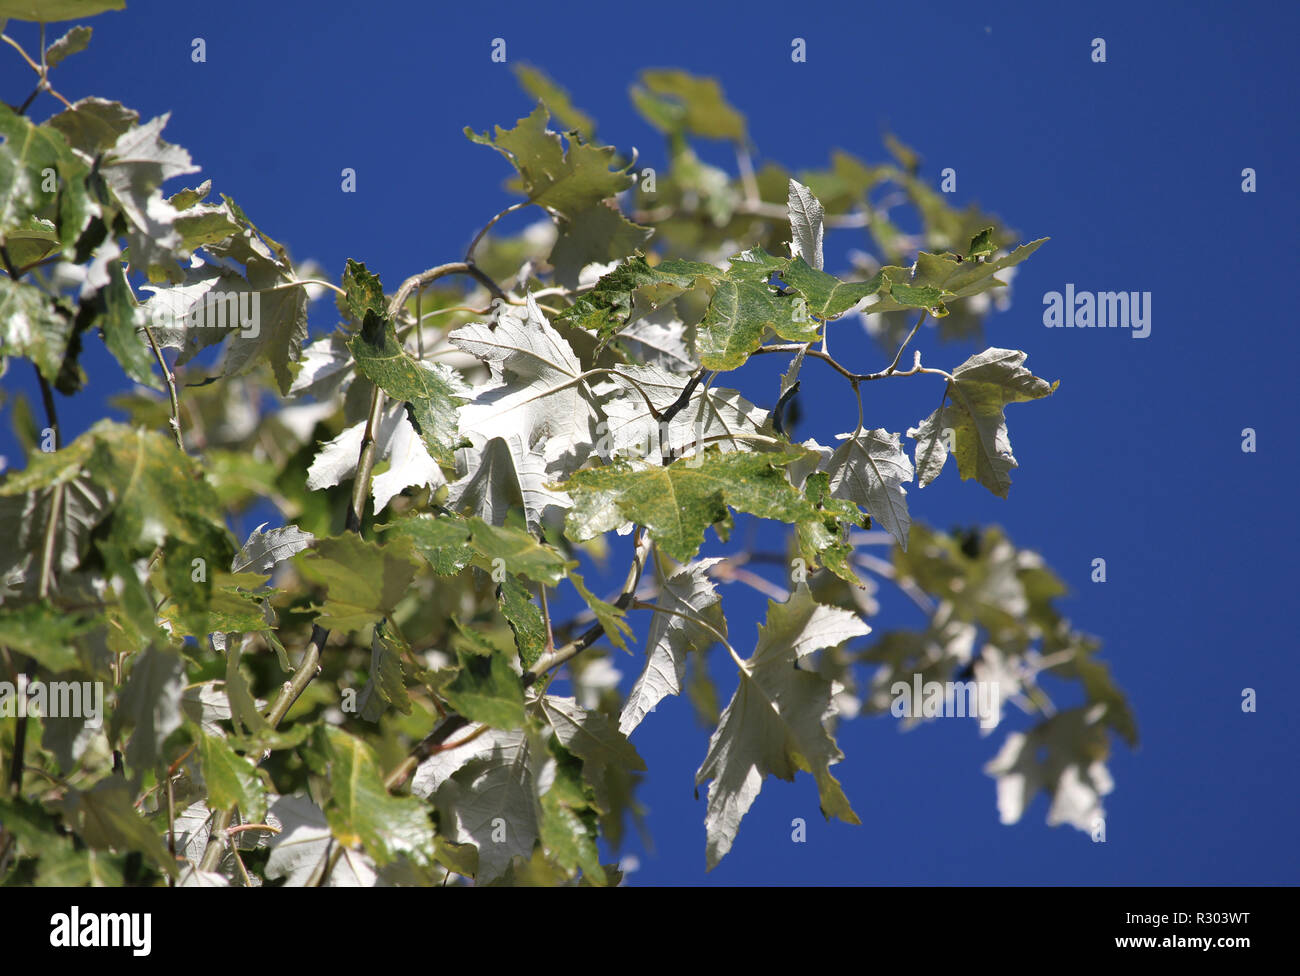 Bella bianco argentee fronde dell'albero Populus alba (Bianco Polare) contro uno sfondo di cielo blu chiaro. Foto Stock